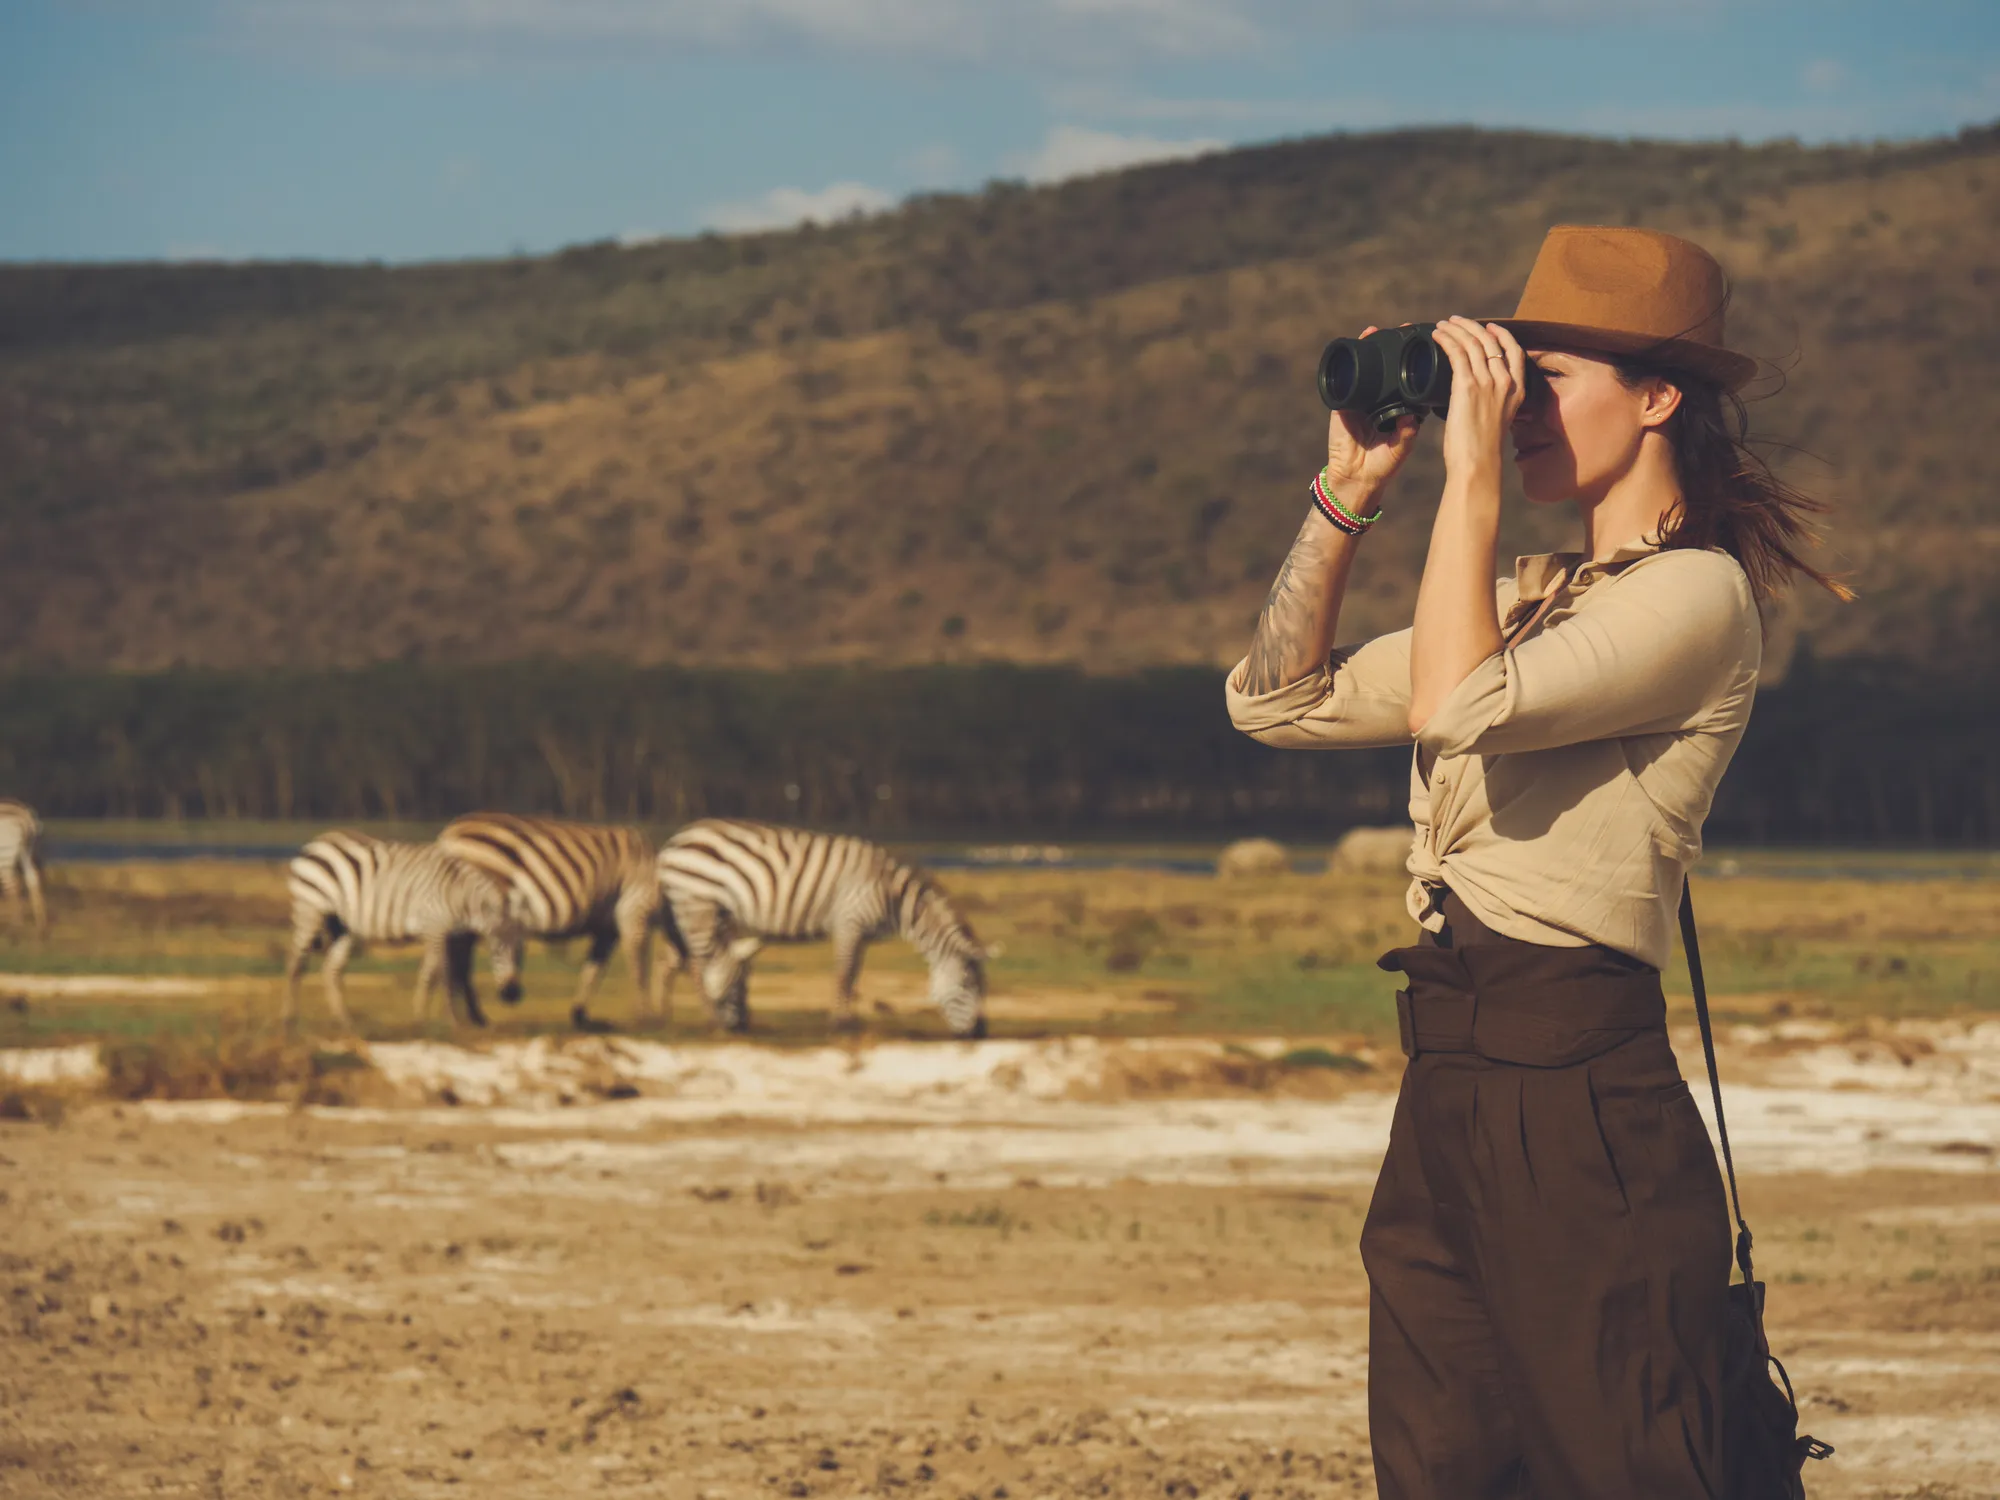 Kenya safari and tours - clothes